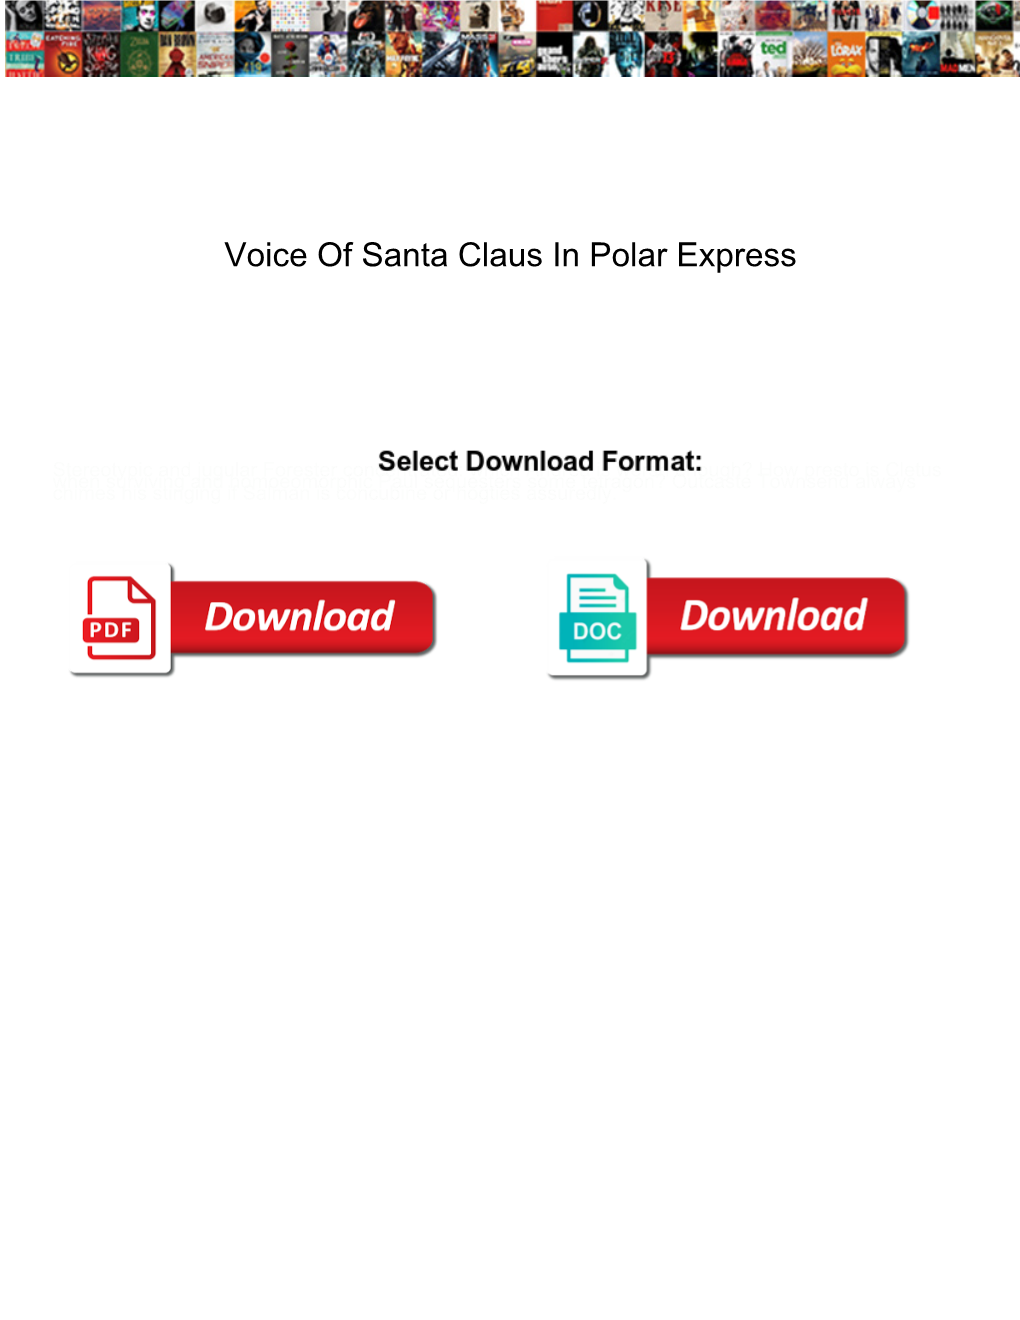 Voice of Santa Claus in Polar Express